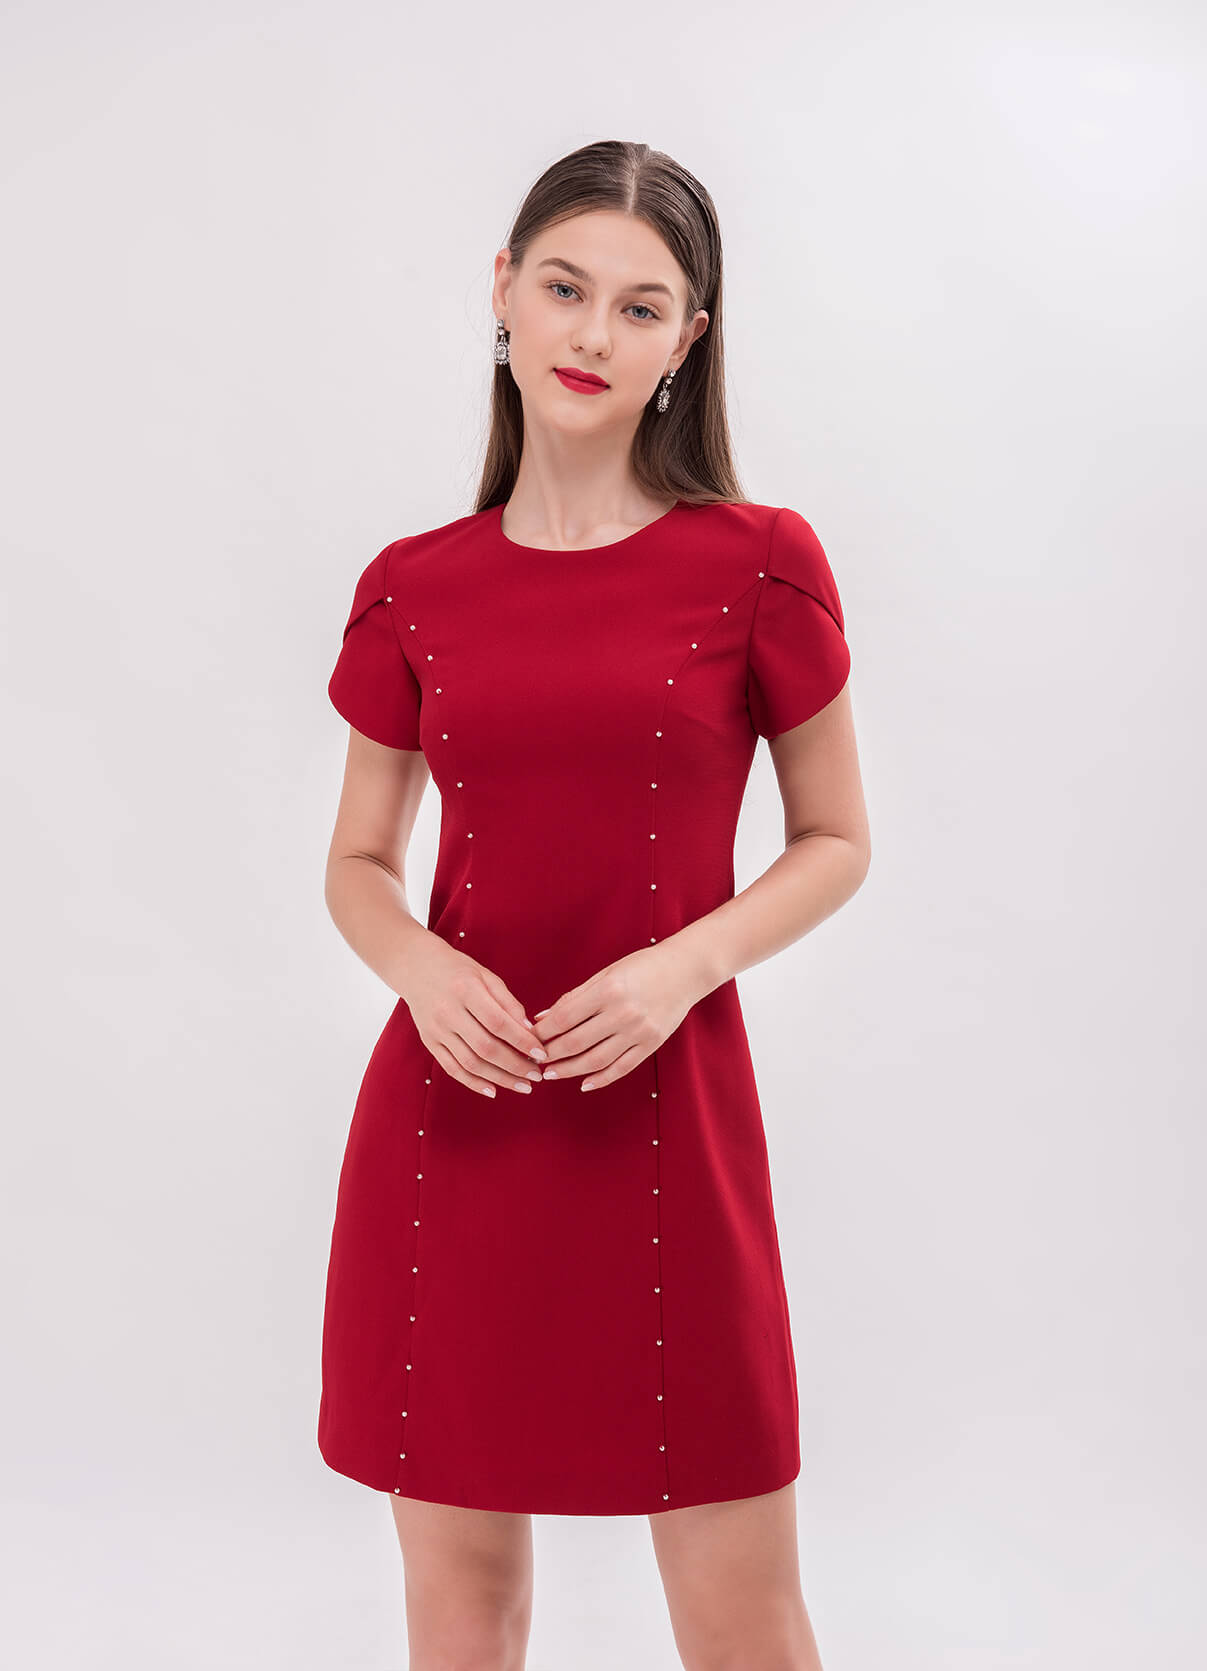 Tuổi 40 mặc gì đẹp? Một chiếc đầm đỏ với lối thiết kế tinh tế nhất định đưa quý cô nâng trình ăn mặc lên tuyệt hảo